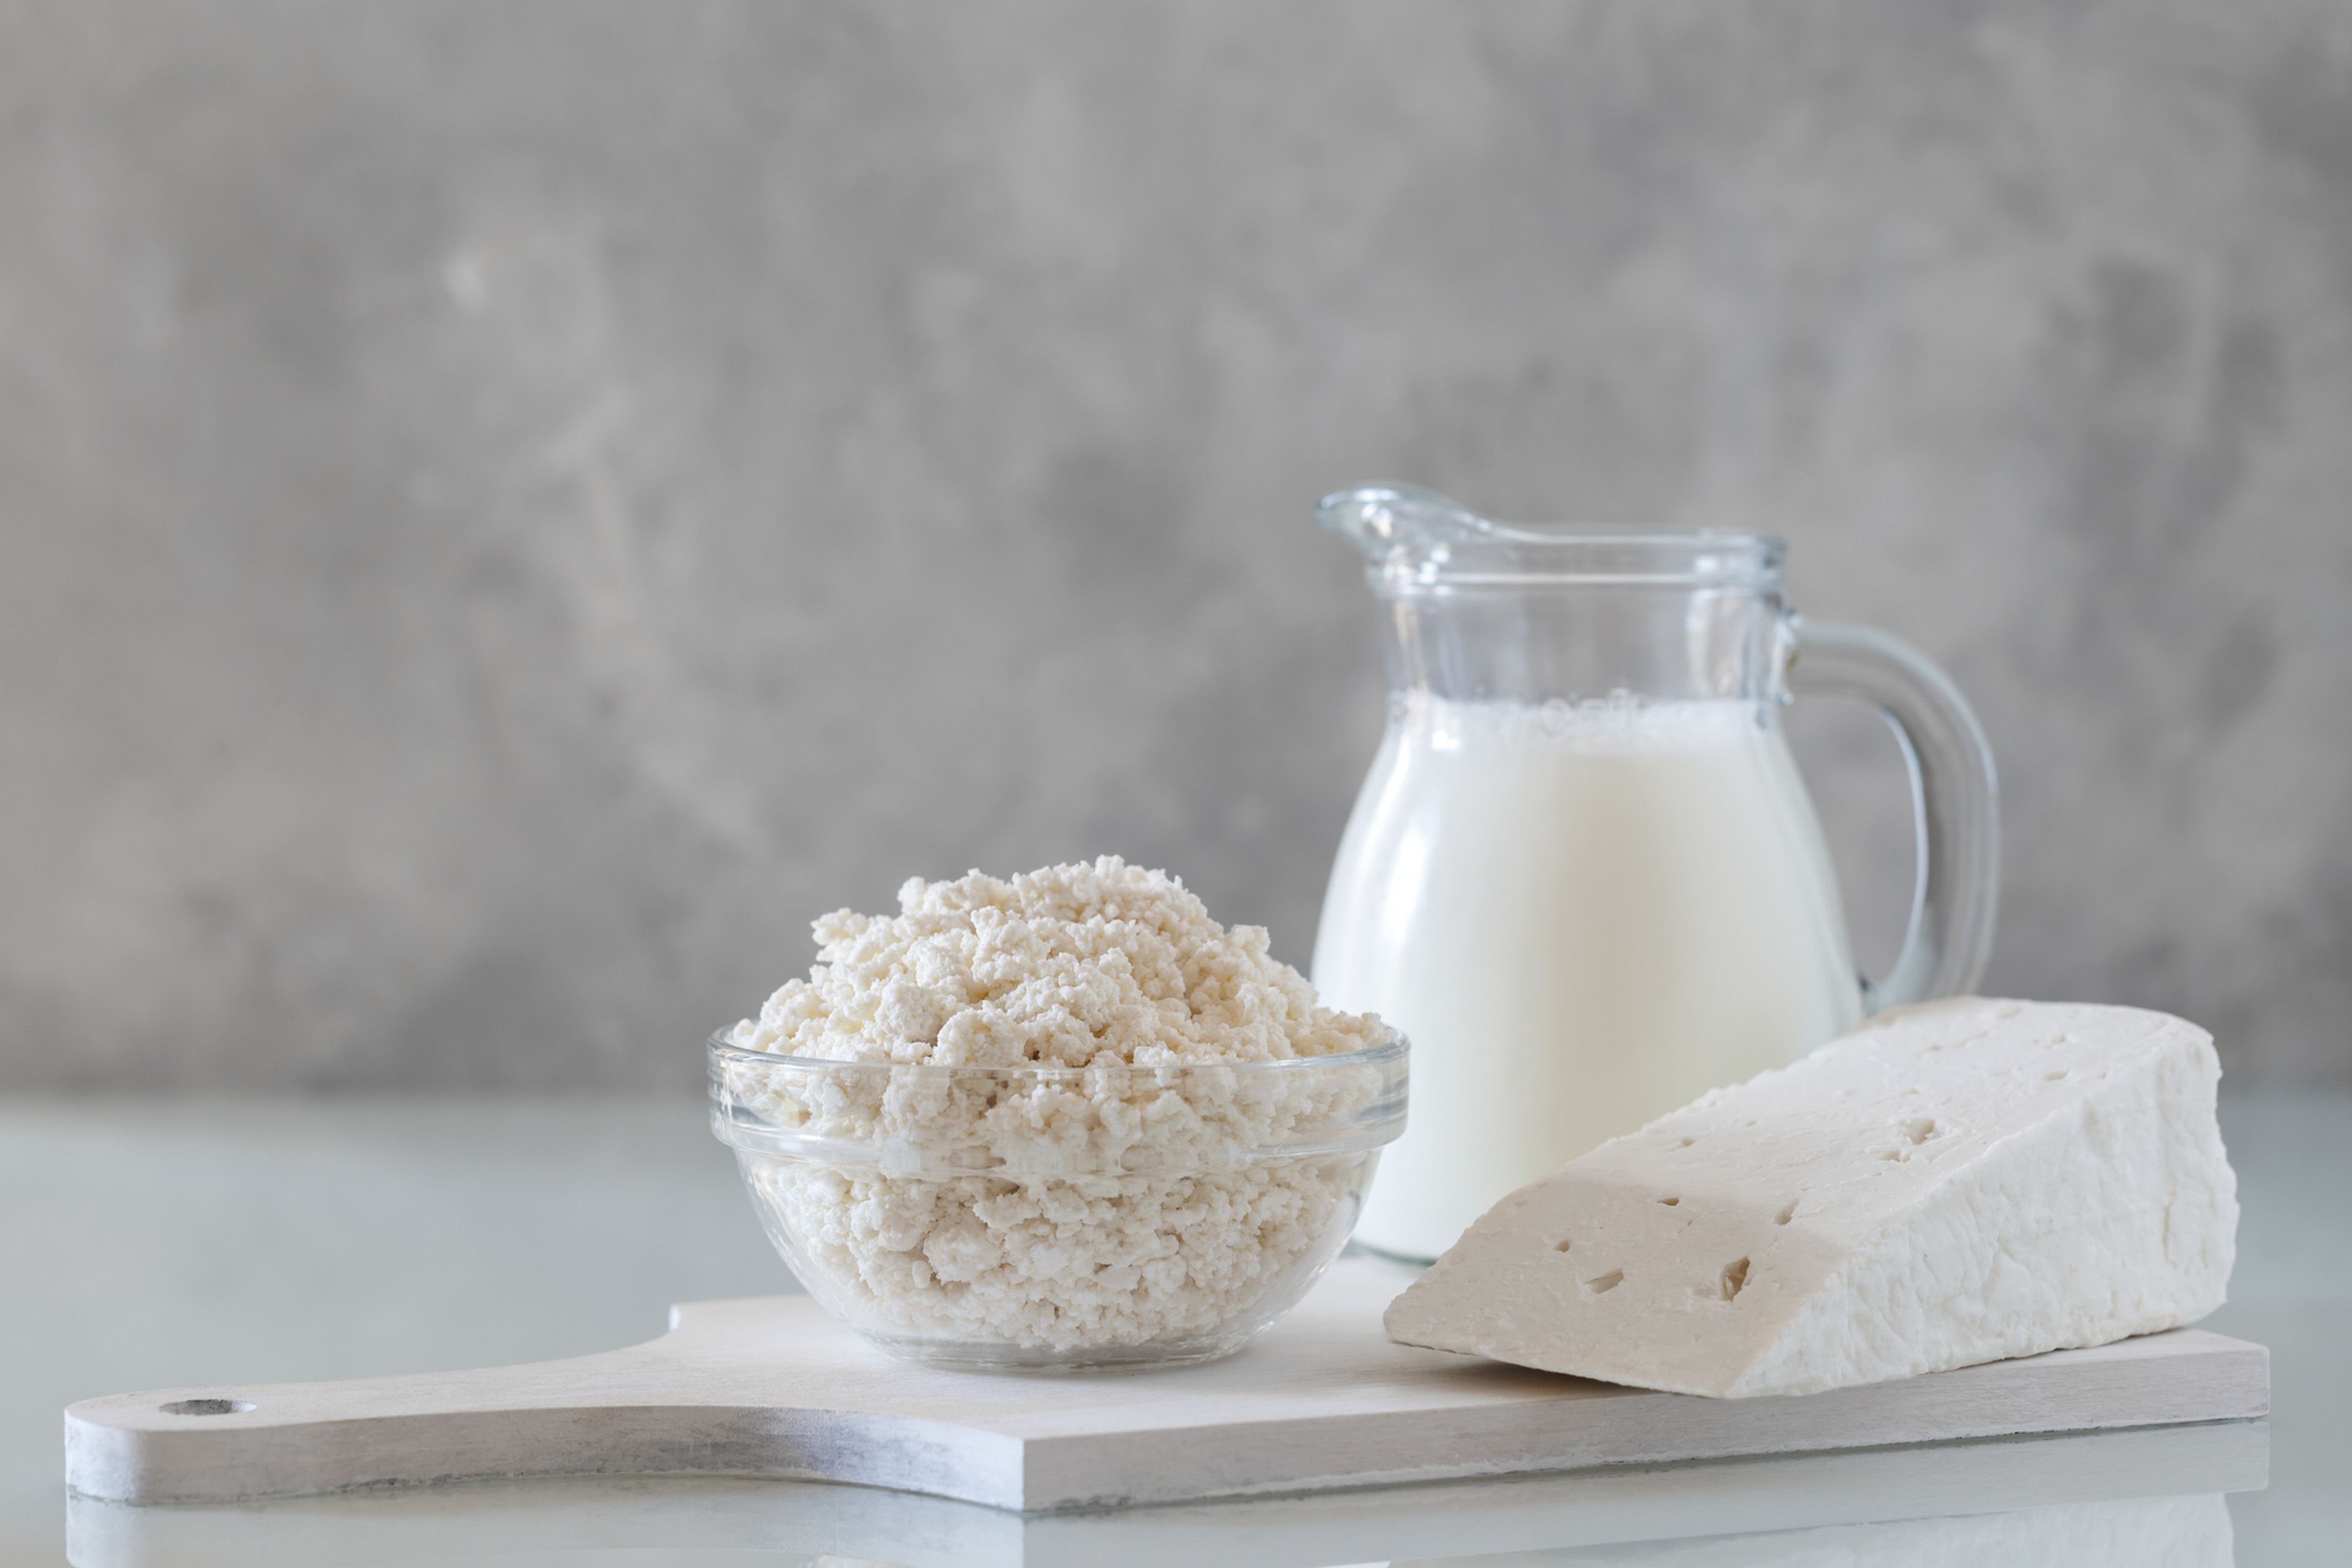 El kéfir de leche es uno de los productos lácteos más antiguos del mundo, y que ya se producía en el Cáucaso hace miles de años.